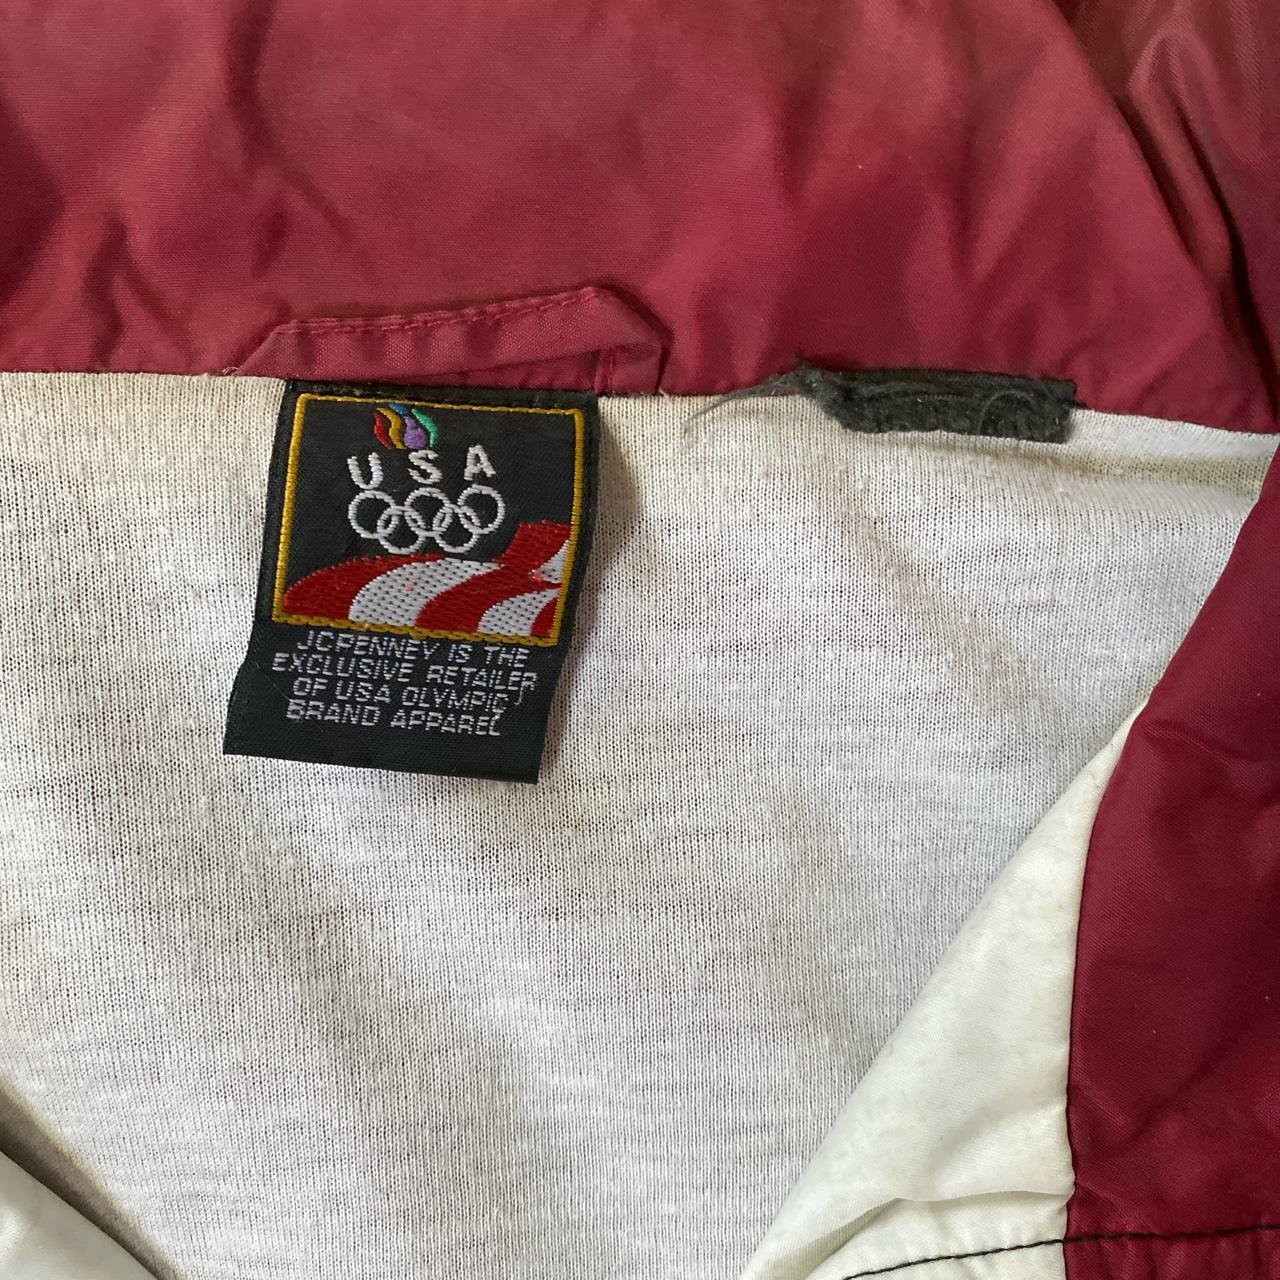 Vintage Windbreaker Jacket Olympics JCPenney... - Depop